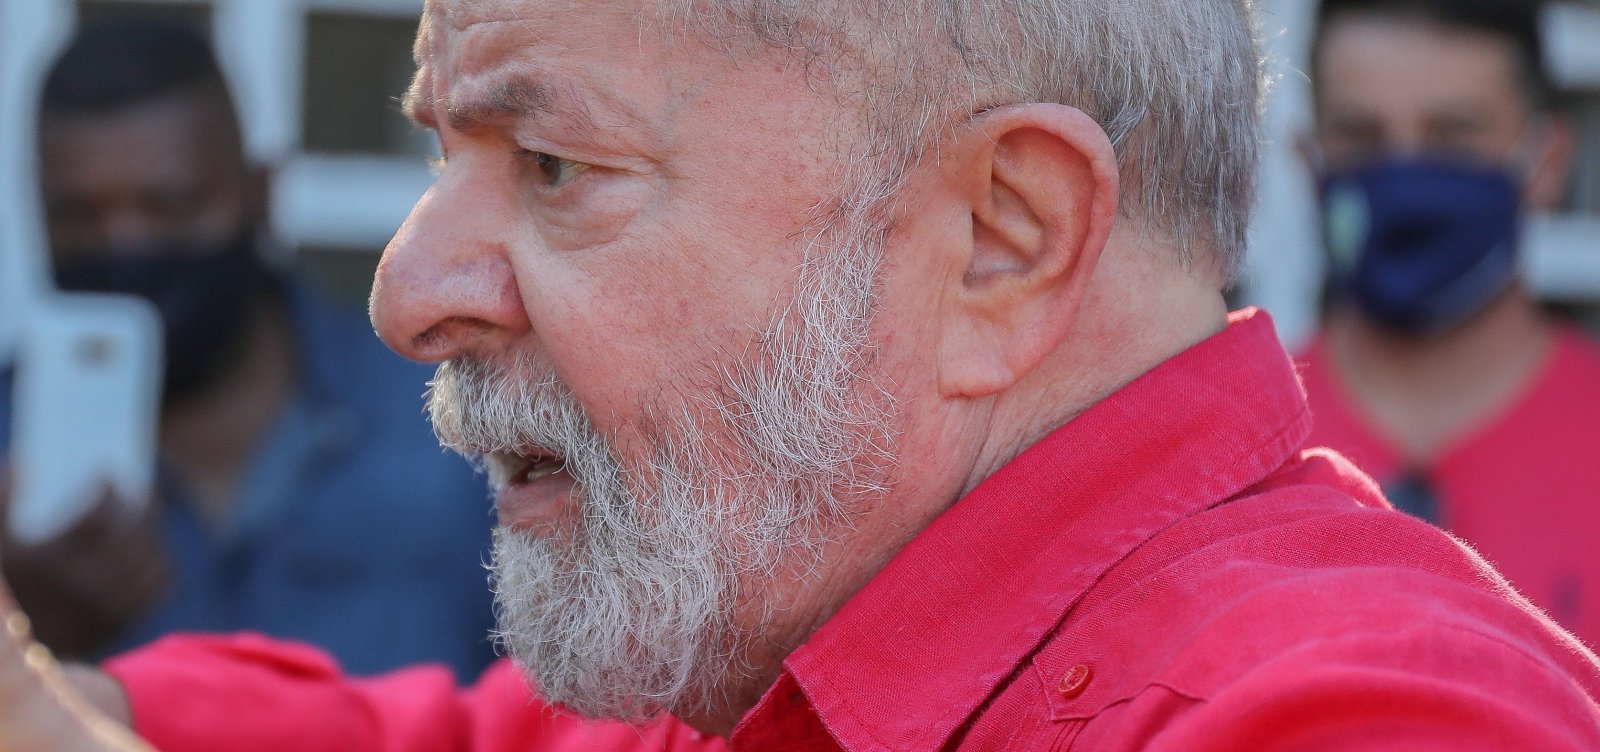 Procuradores da Operação Lava Jato omitiram grampo que beneficiaria defesa de Lula